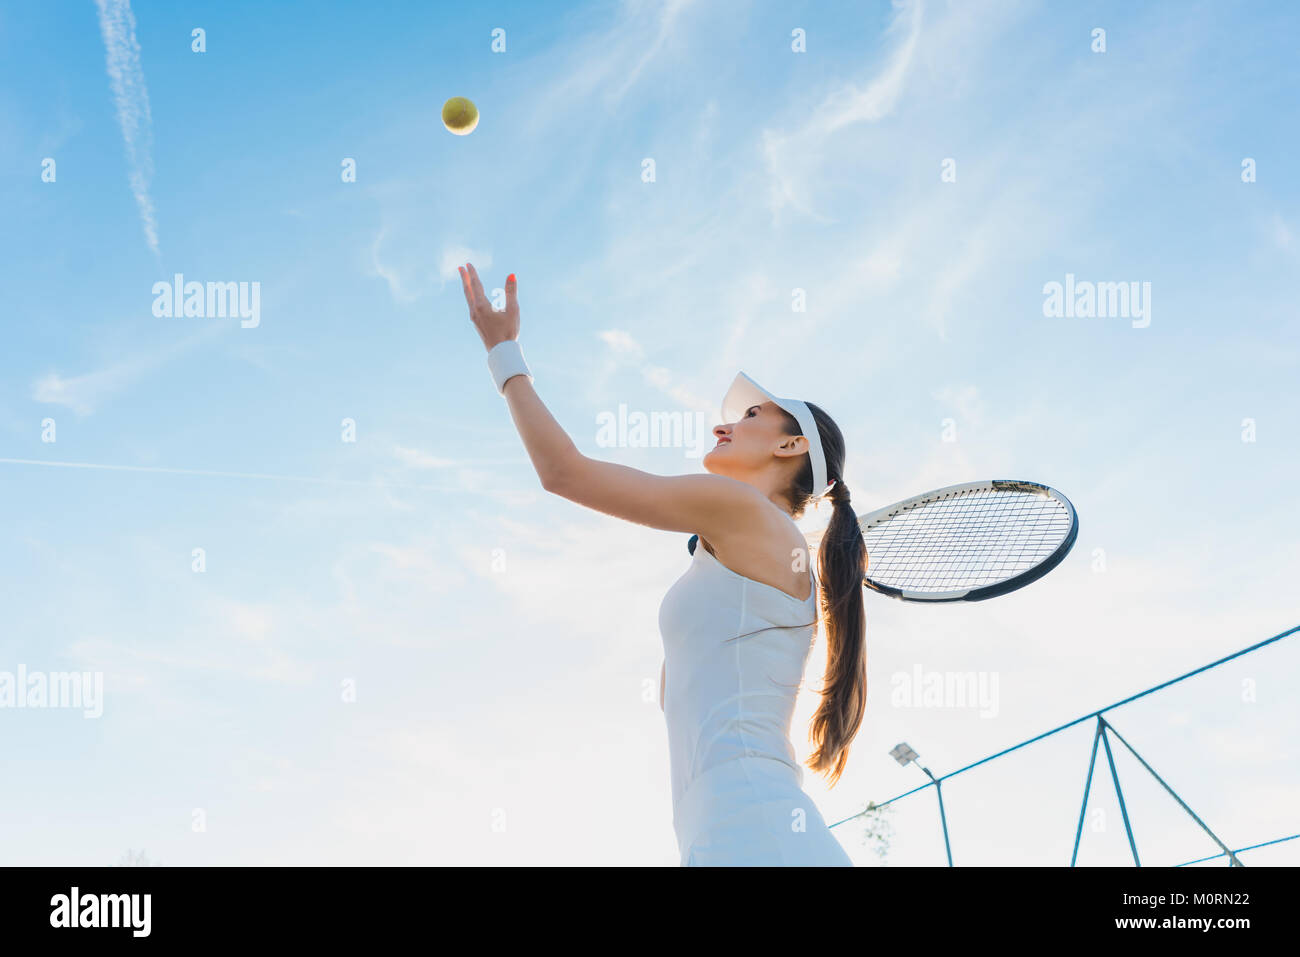 Mujer jugando al tenis dando servicio Foto de stock